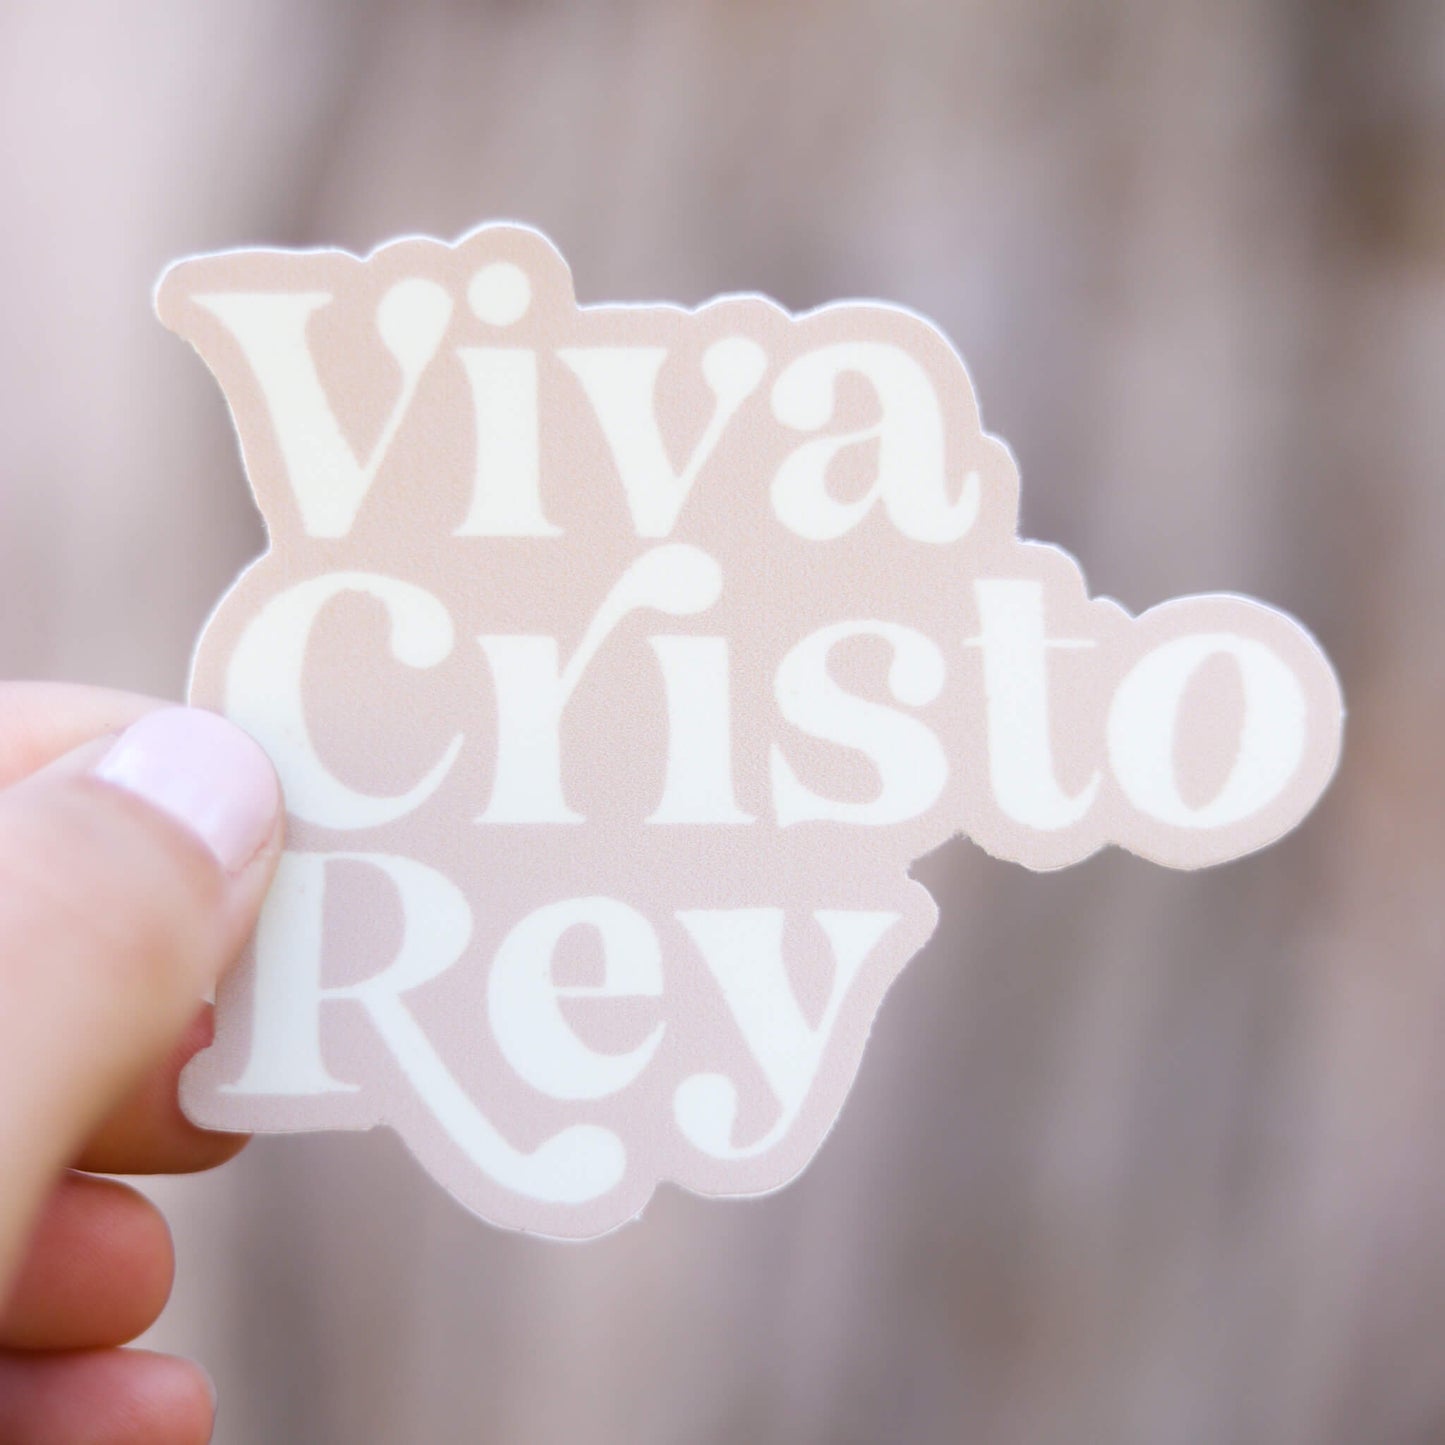 Viva Cristo Rey Catholic sticker